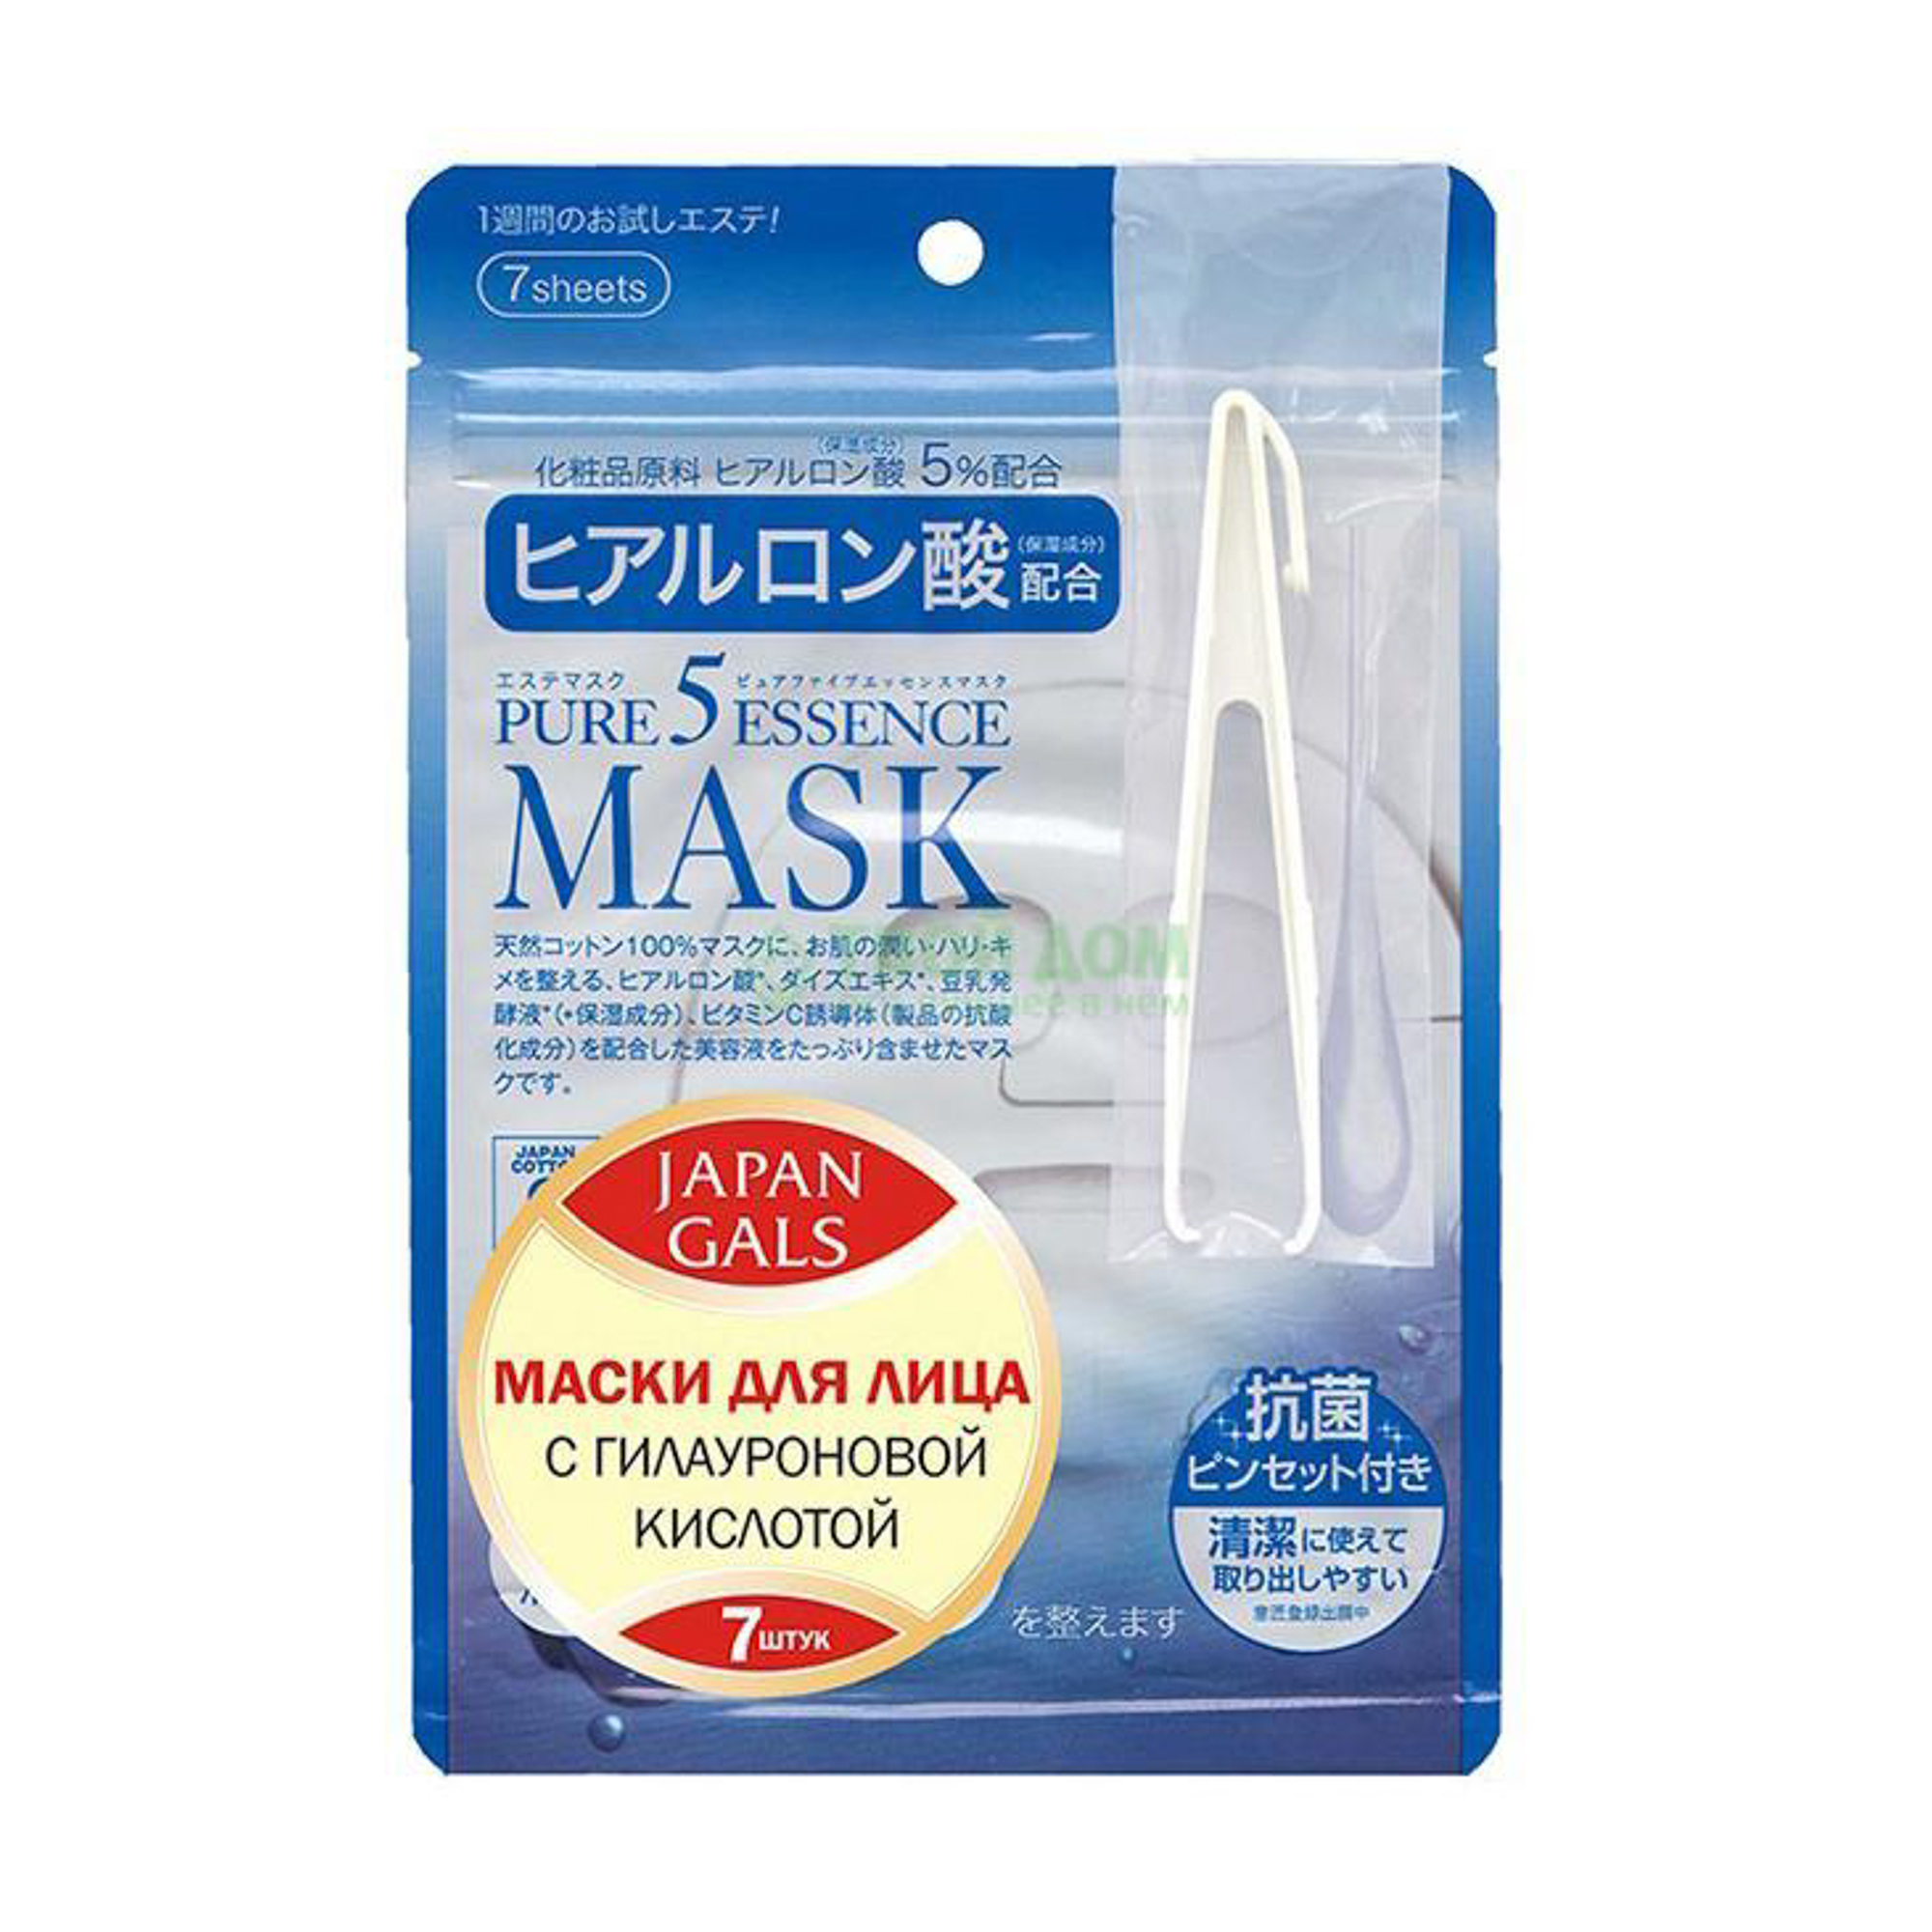 фото Маска japan gals для лица pure essence hyaluronic acid mask 7 шт